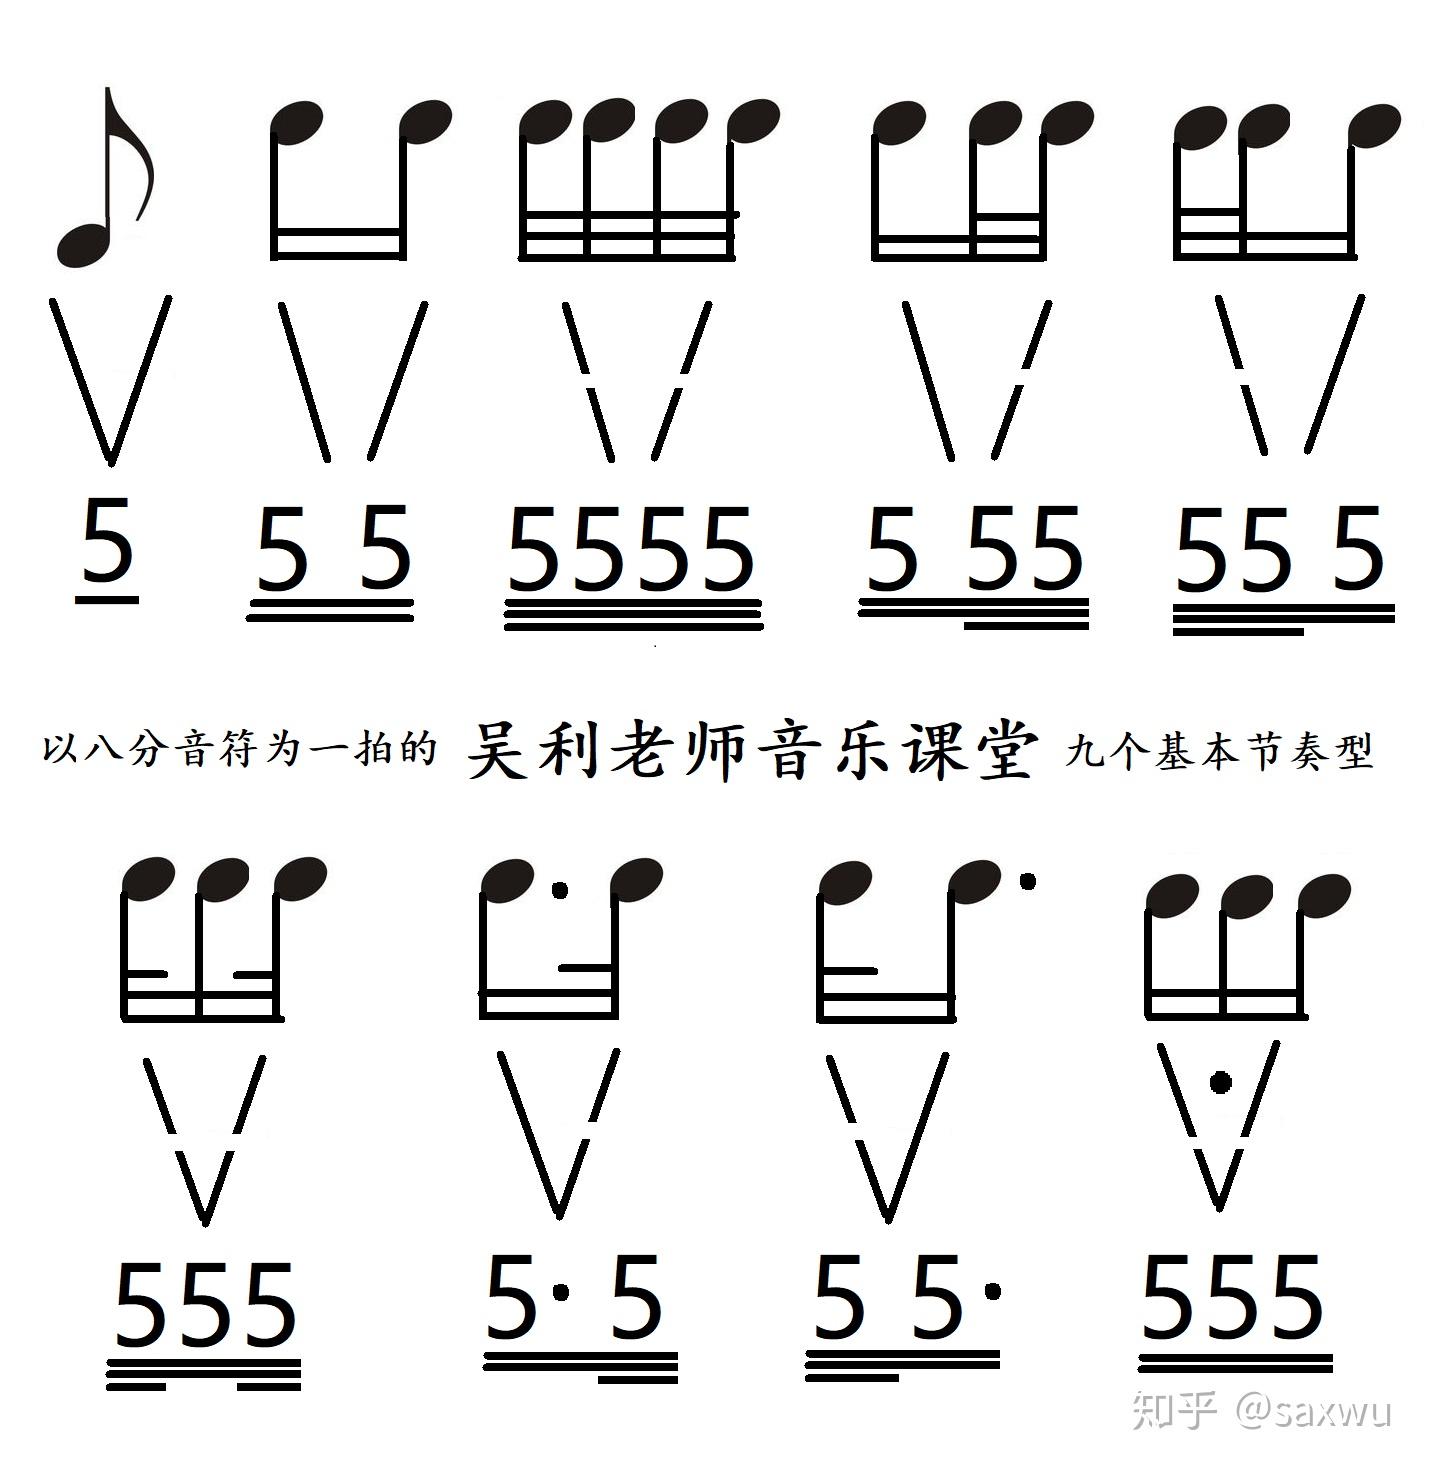 钢琴键盘布局、五线谱简介、音名、唱名、谱号、音的分组_note1 - 哔哩哔哩